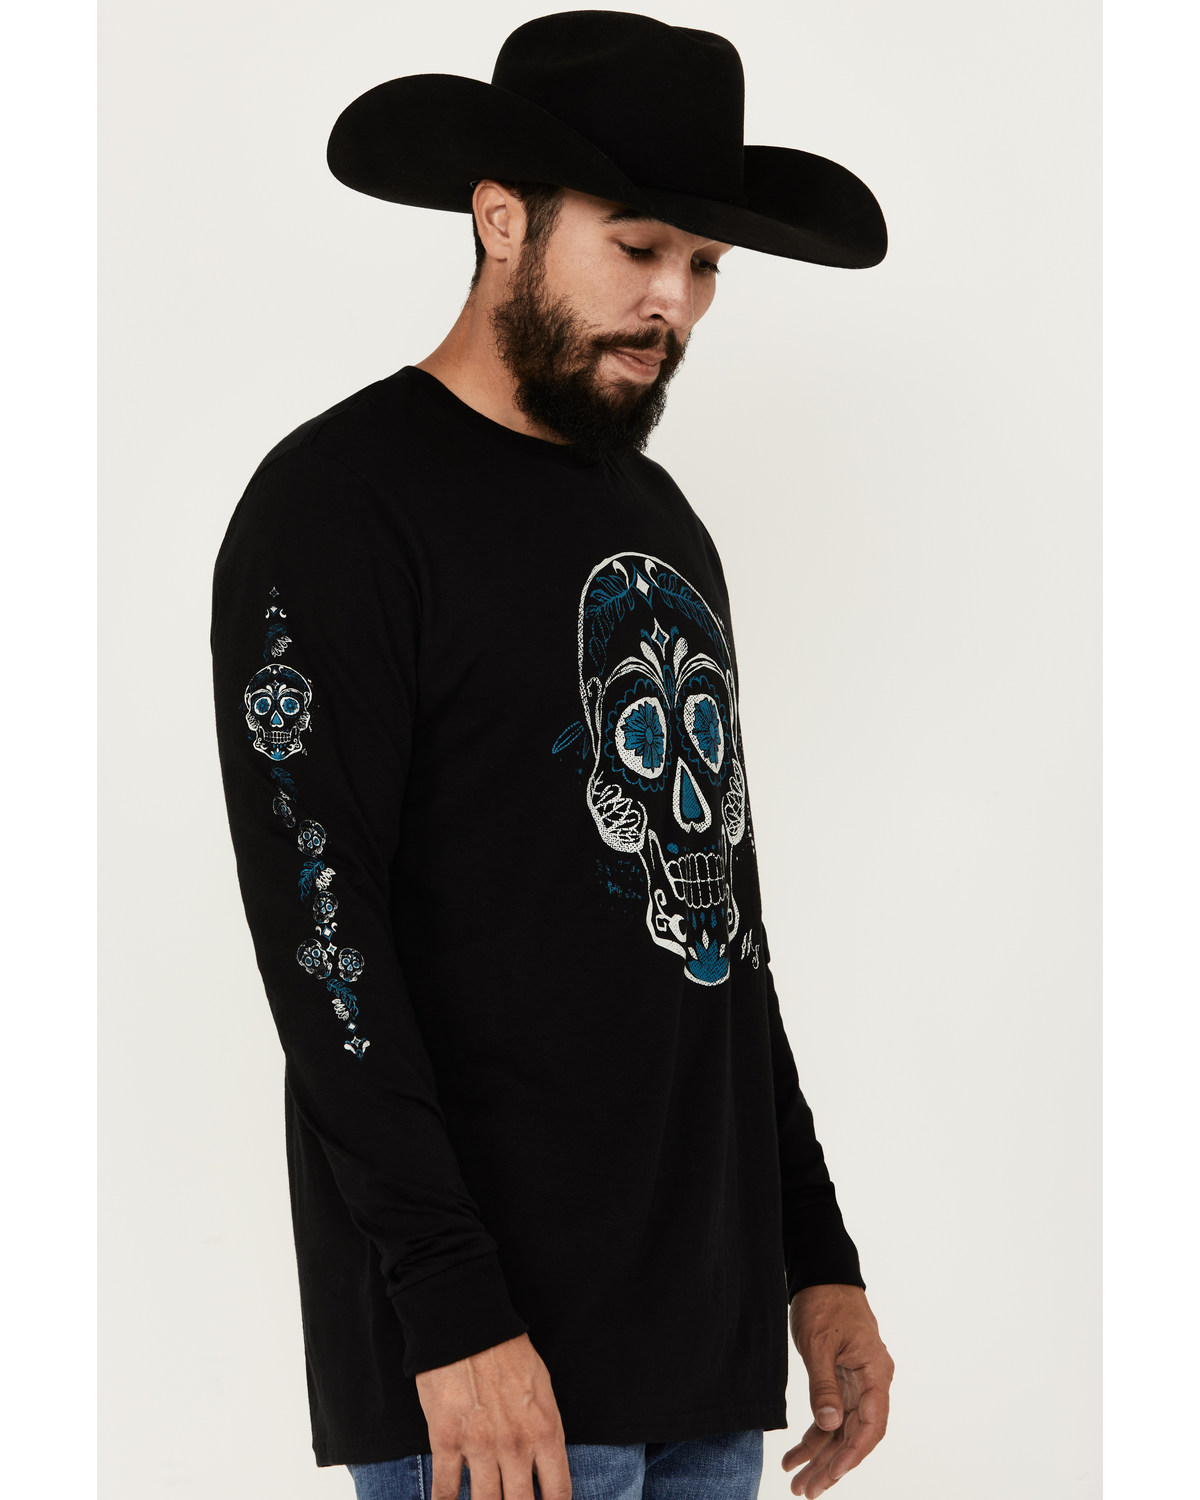 Moonshine Spirit Men's Candy Skull Long Sleeve Graphic T-Shirt